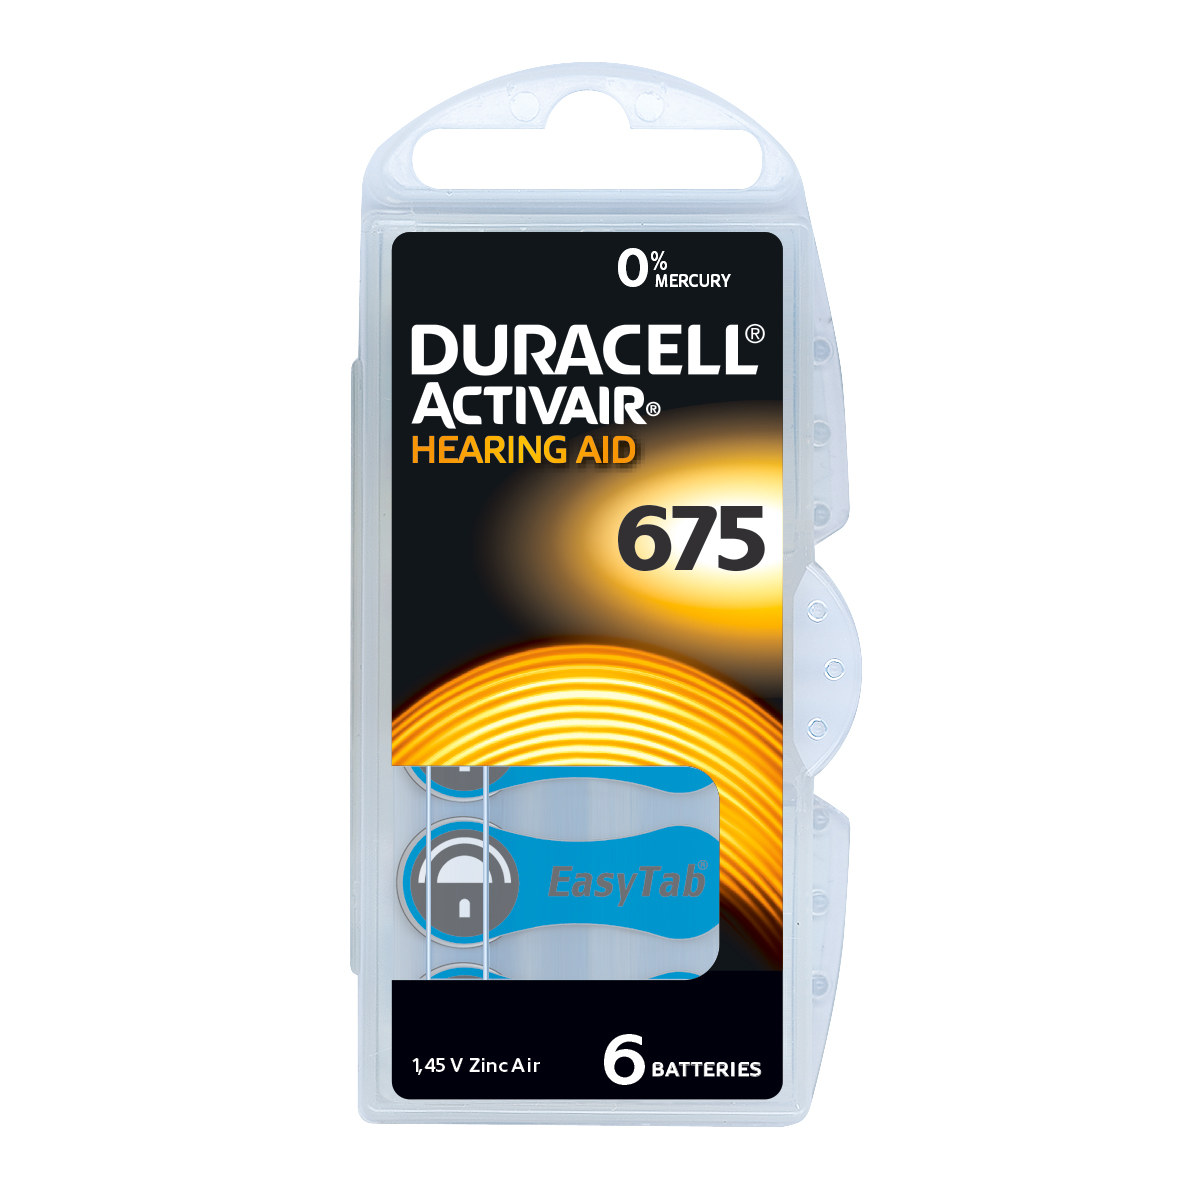 Duracell Activair Pack 6 Hörgerätebatterien Zink Air Nr. 675, Blister